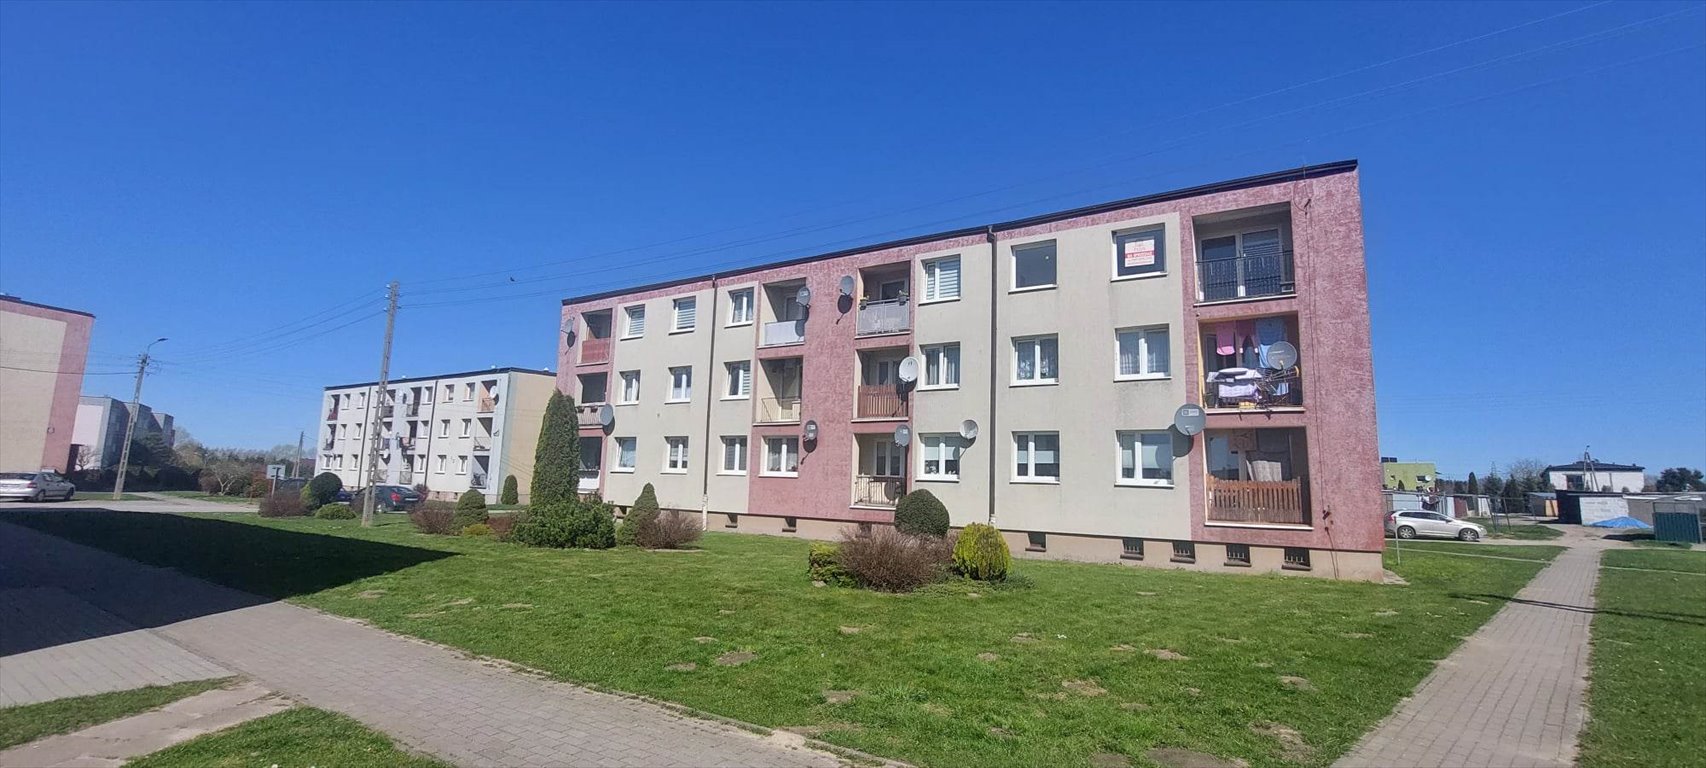 Mieszkanie dwupokojowe na sprzedaż Gniewino, osiedle KASZUBSKIE  42m2 Foto 3